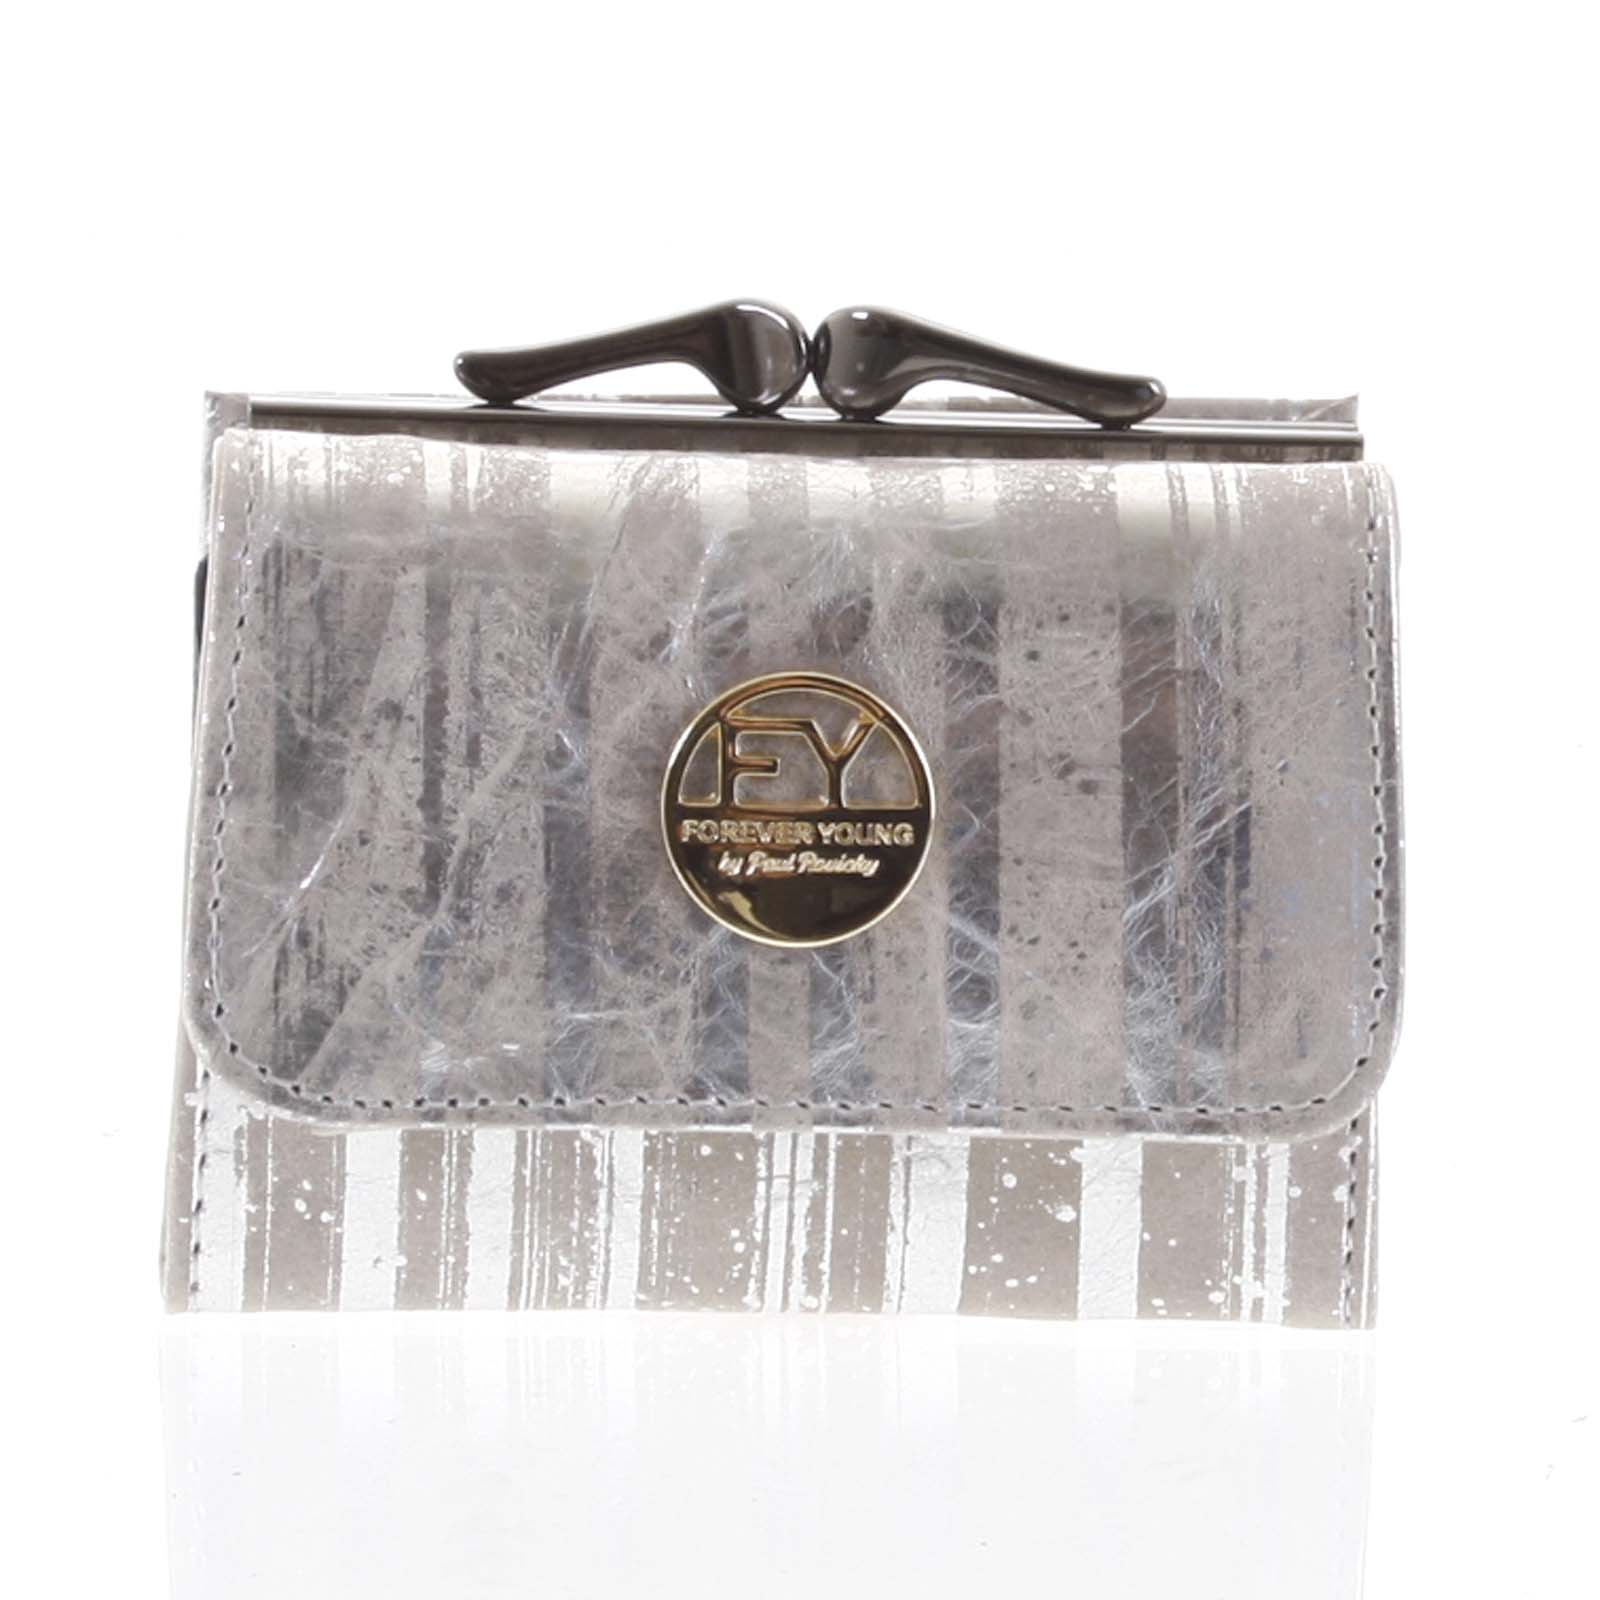 Malá dámská peněženka kožená stříbrná - Rovicky 55287